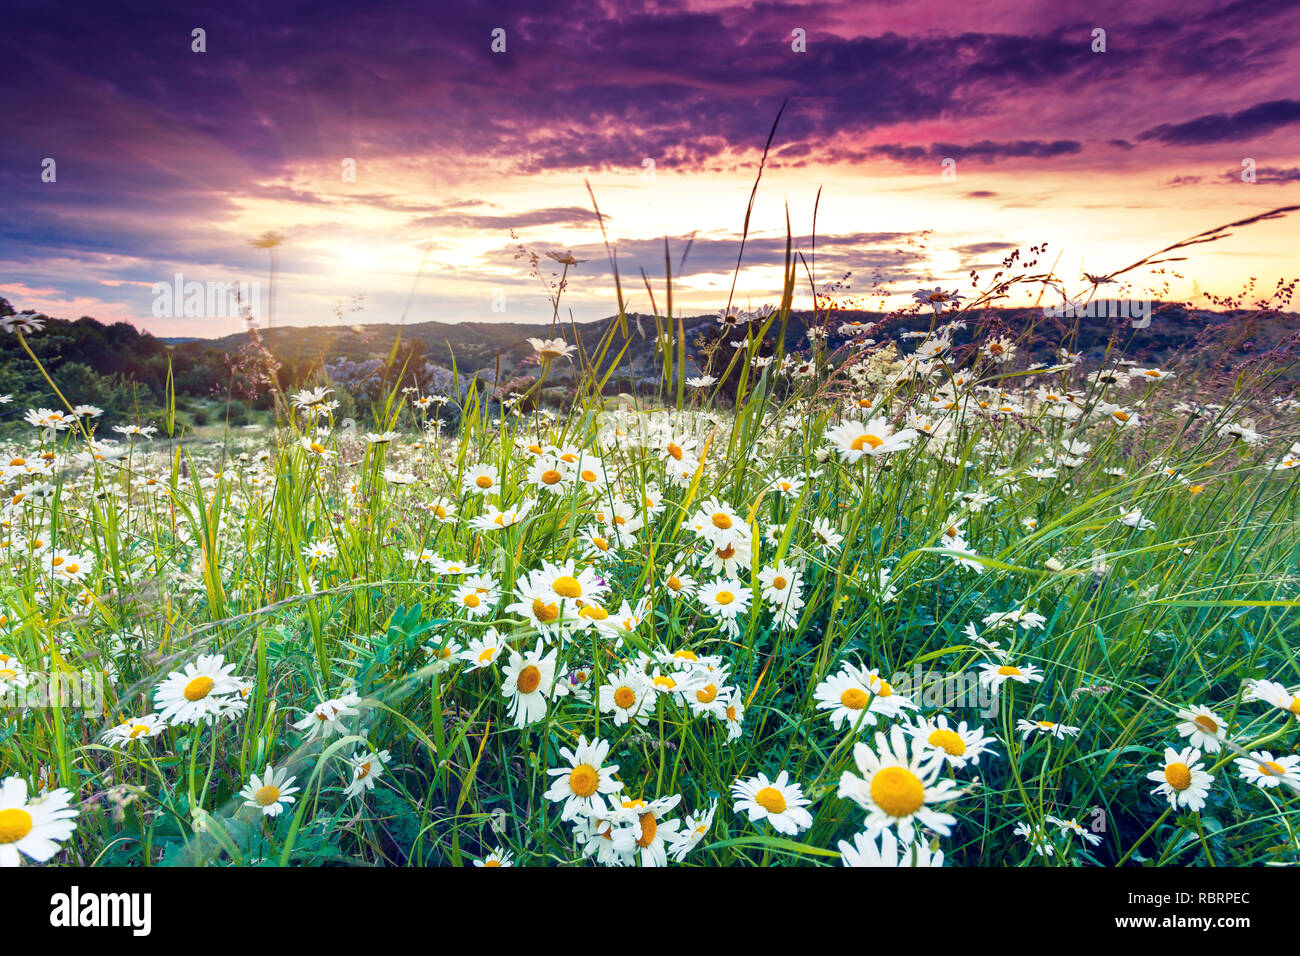 Sonnenuntergang in der majestätischen Bergwelt. Dramatische bewölkten Himmel. Krim, Ukraine, Europa. Beauty Welt. Stockfoto